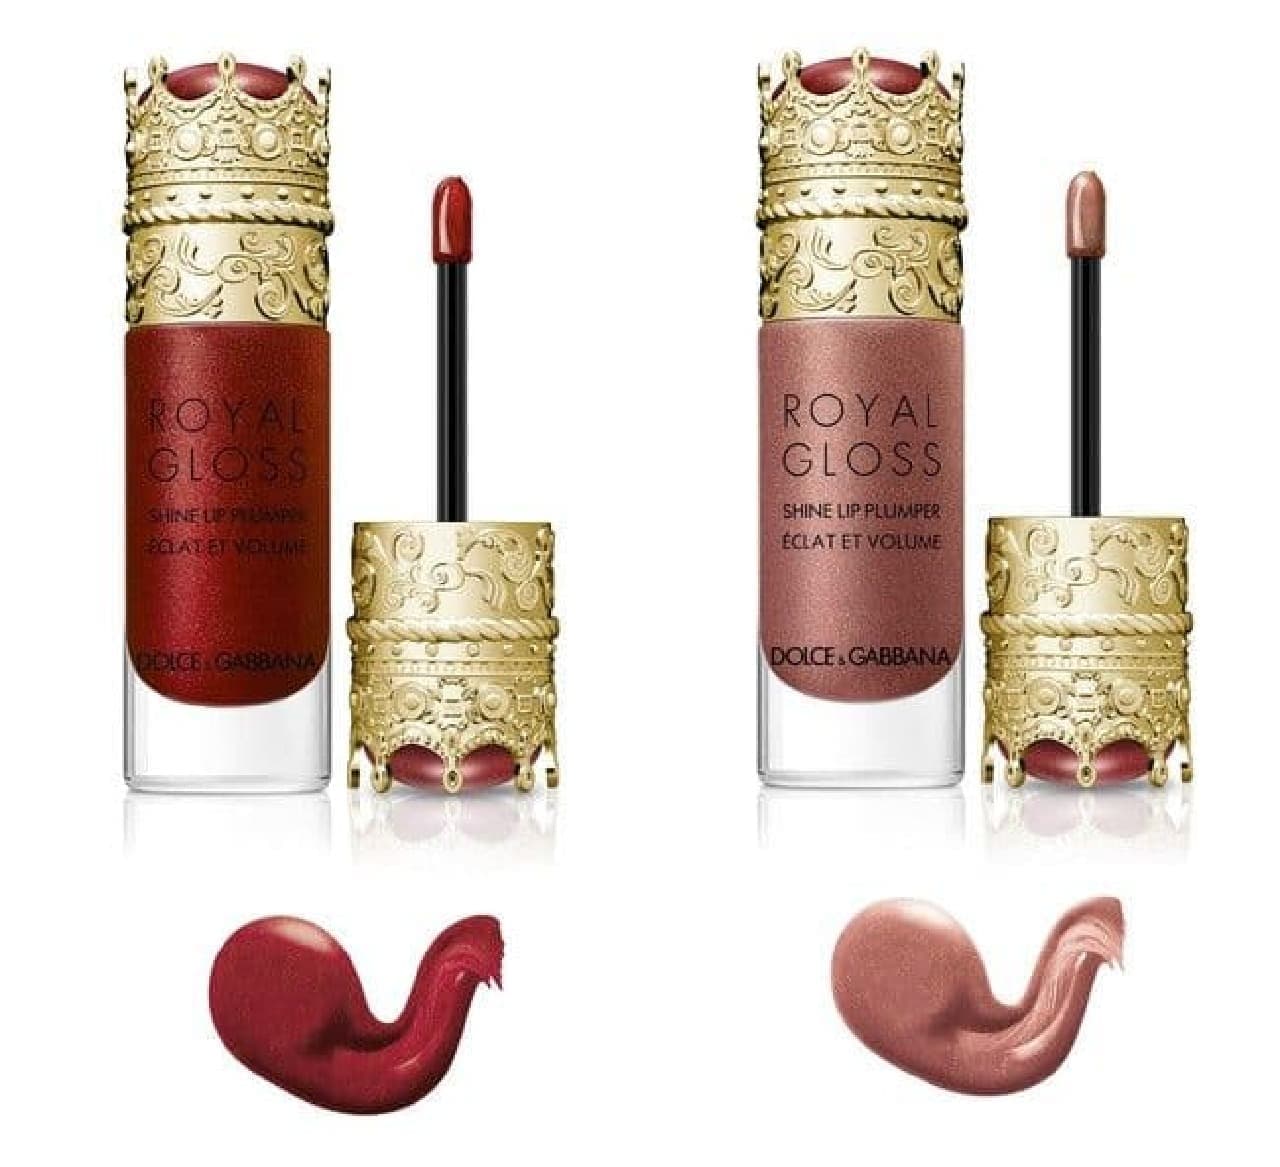 Dolce & Gabbana "Royal Gloss Shine Lip Plumper N"